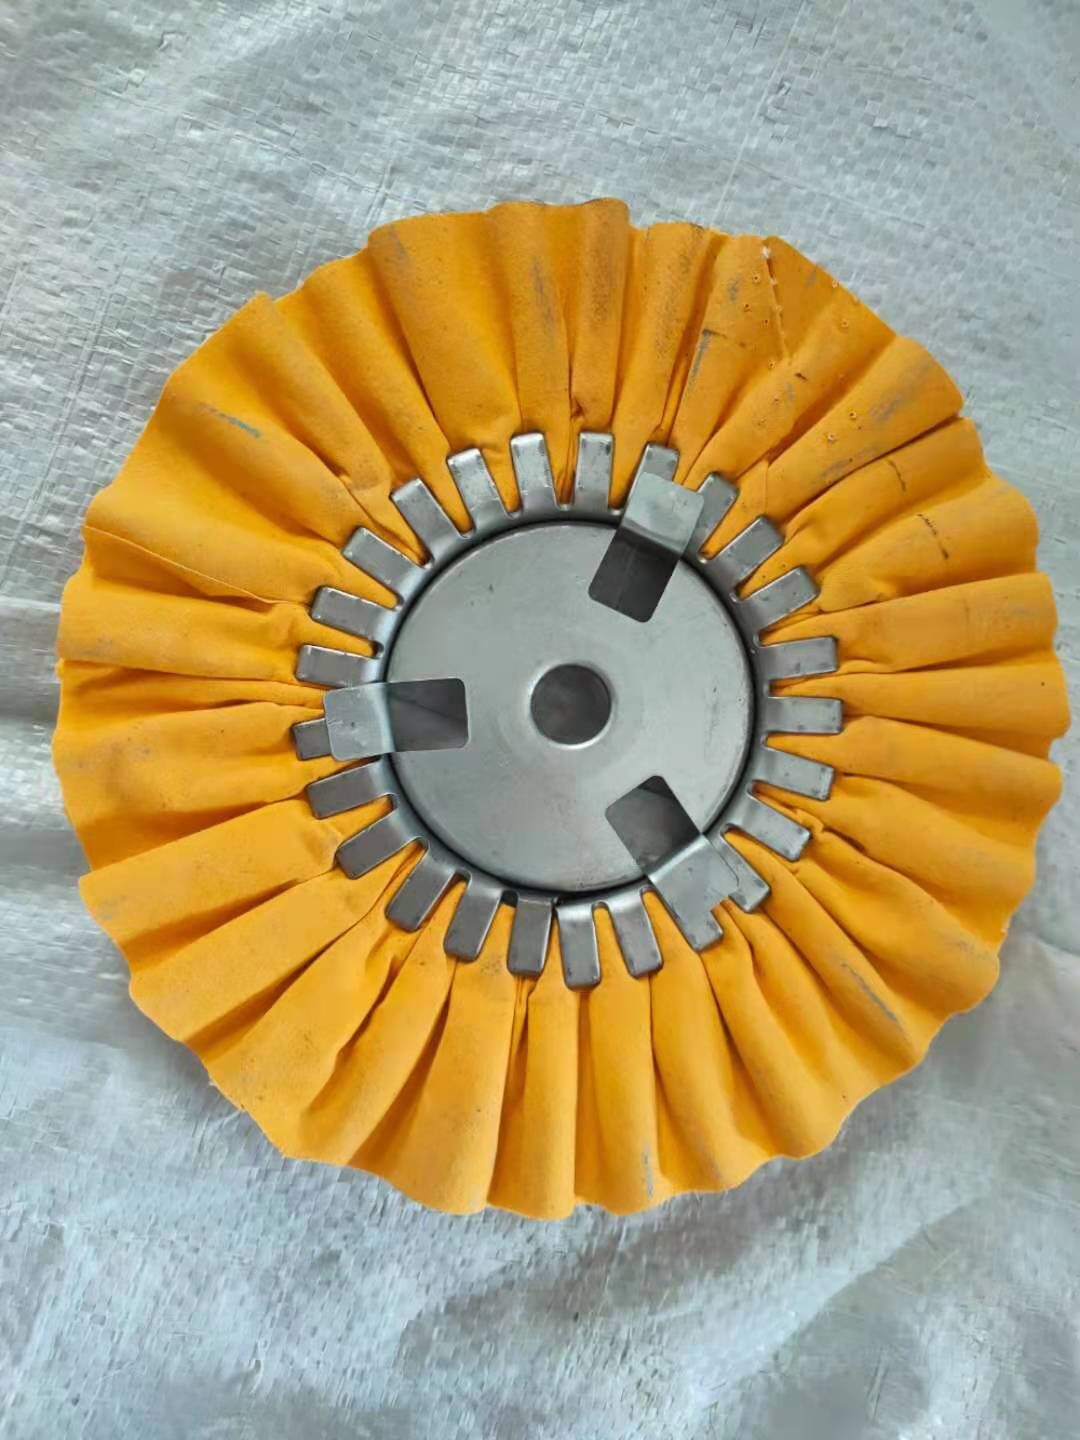 Colors of airway polish buffing wheel - Guangzhou Chuanglian